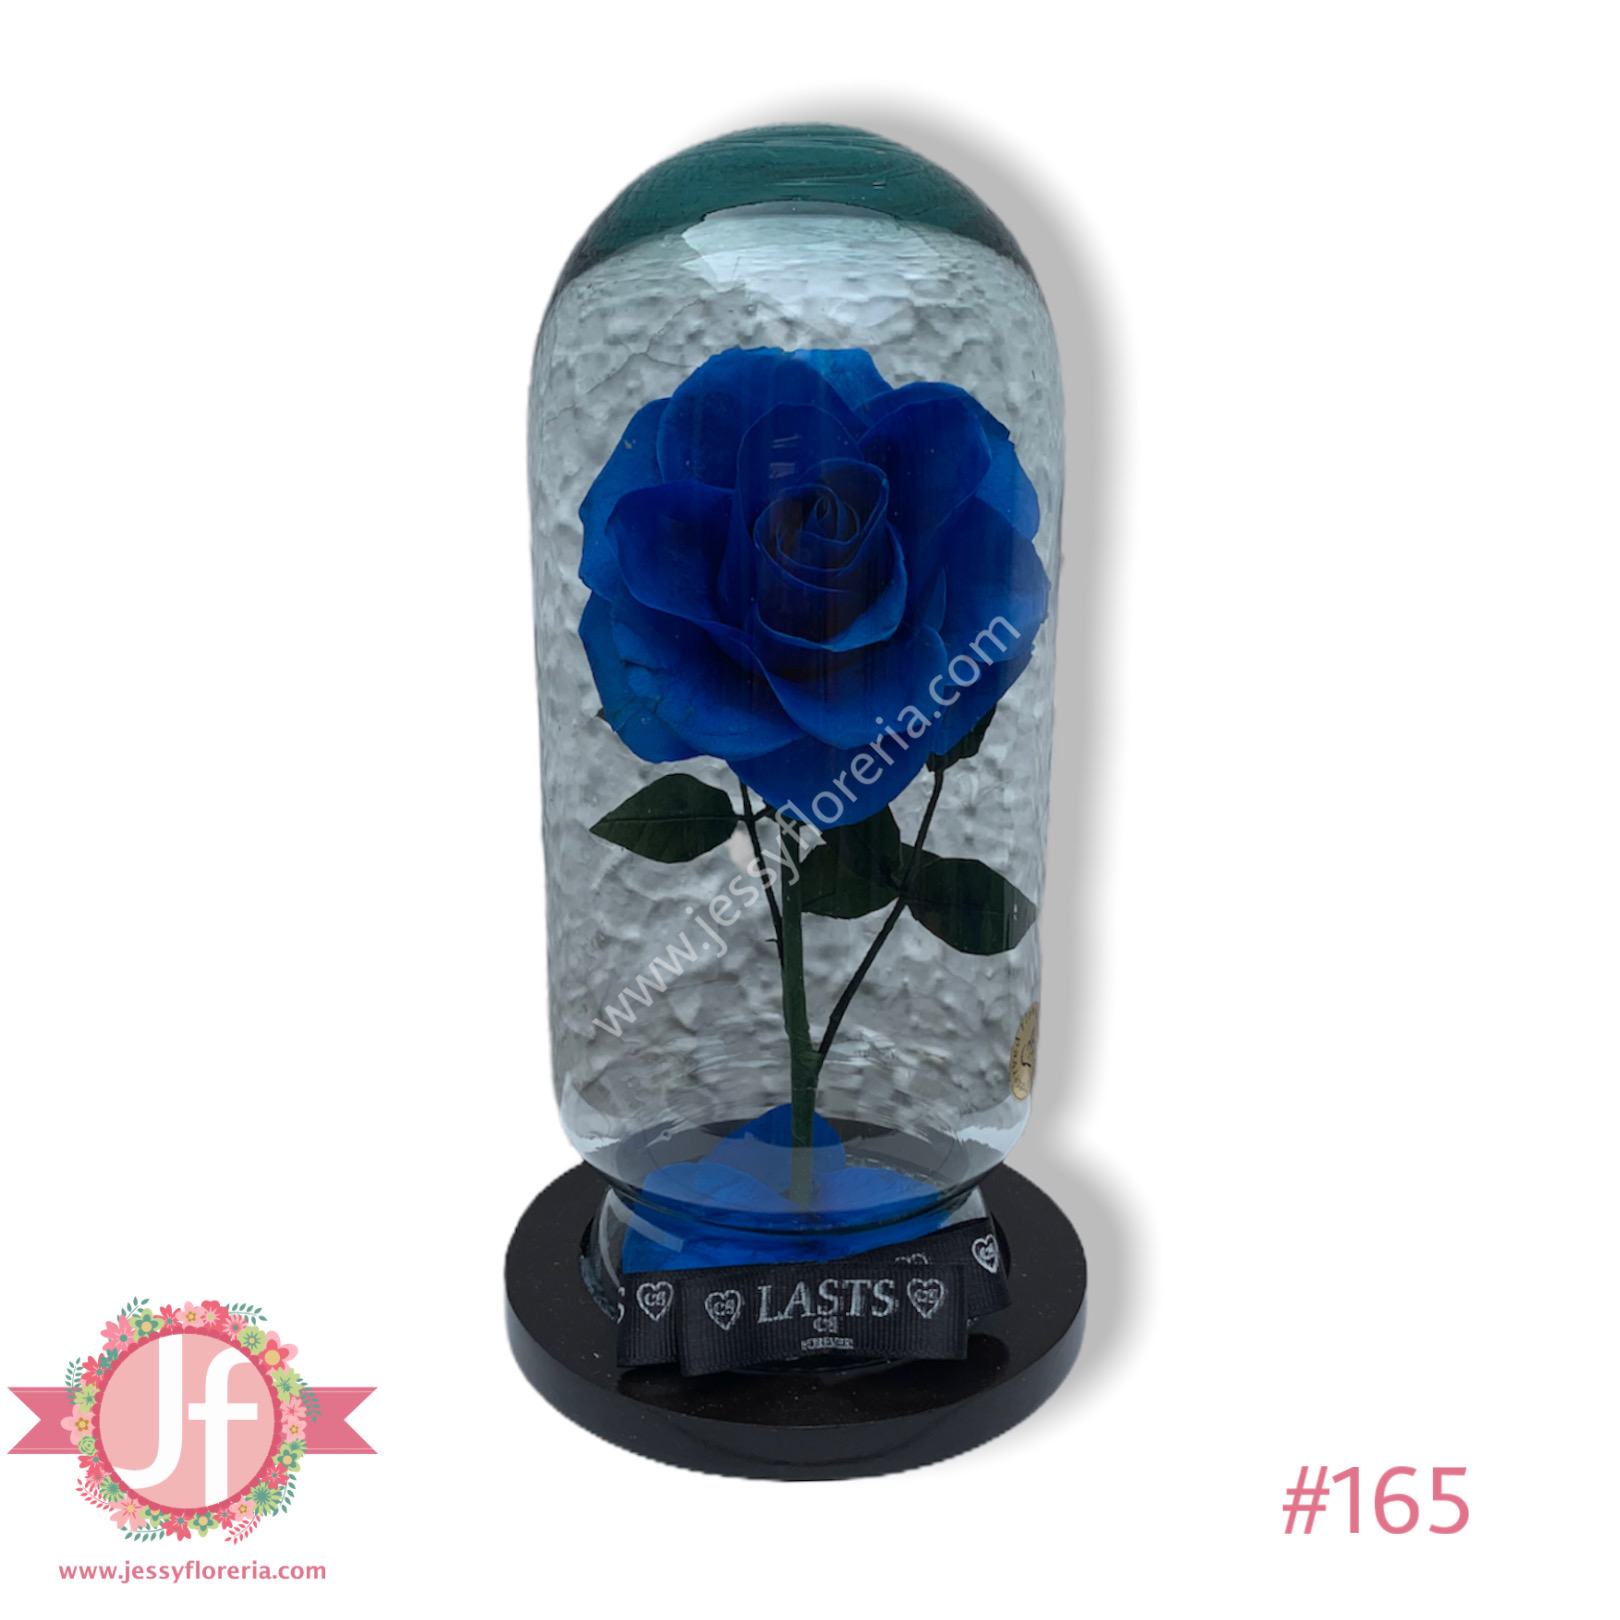 Rosa eterna azul - Envíos GRATIS Mismo día 2 a 4 Hrs